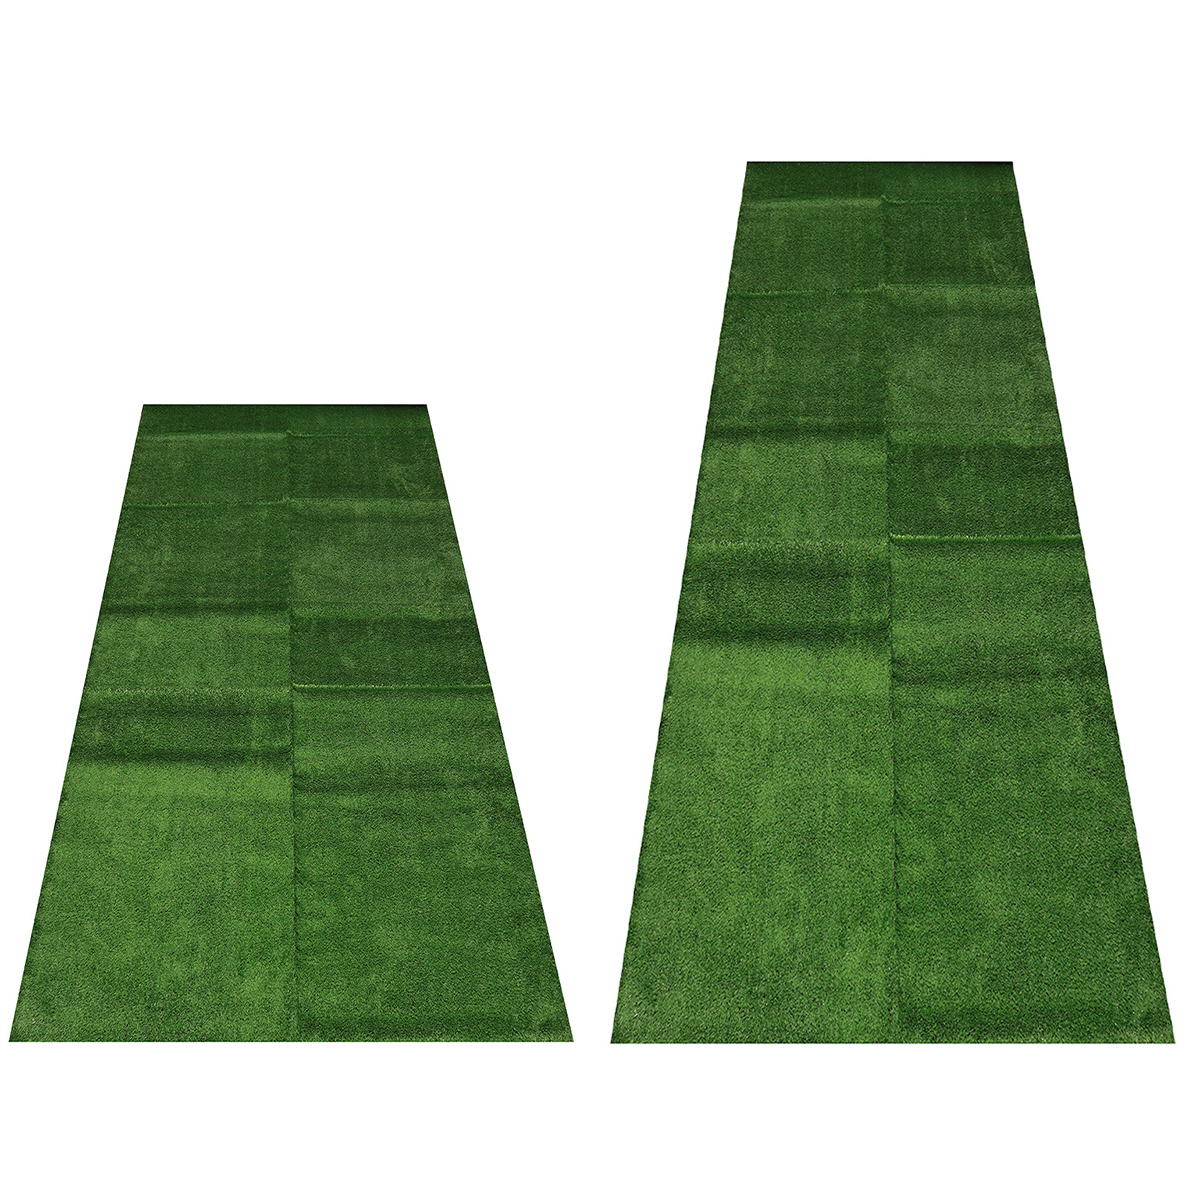 15mm-Artificial-Grass-Mat-Lawn-Synthetic-Green-Yard-Garden-InOutdoor-1715021-2